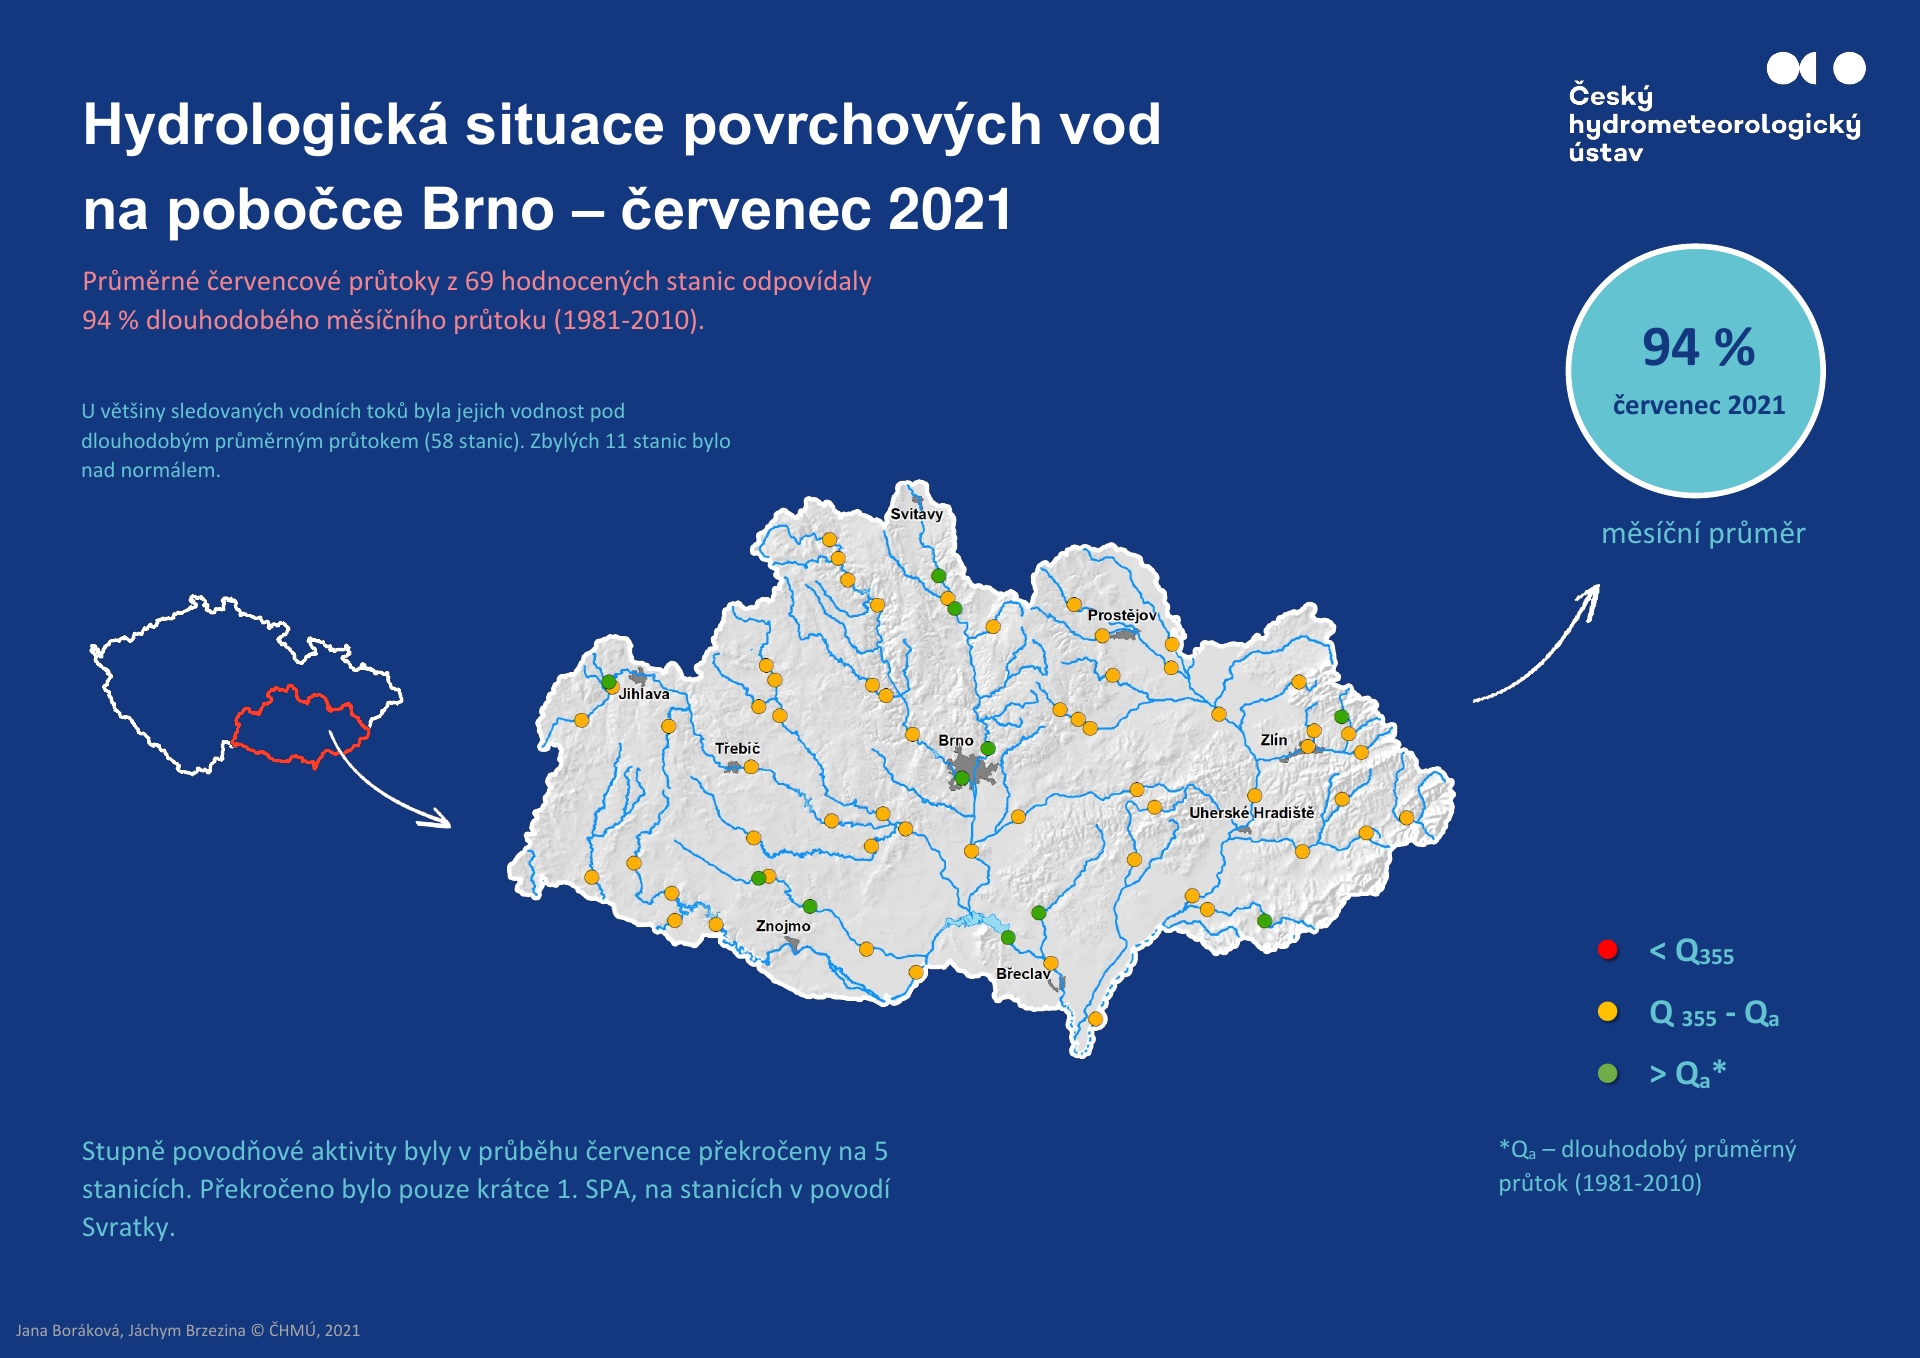 Hydrologická situace povrchových vod na pobočce Brno – červenec 20211 min čtení